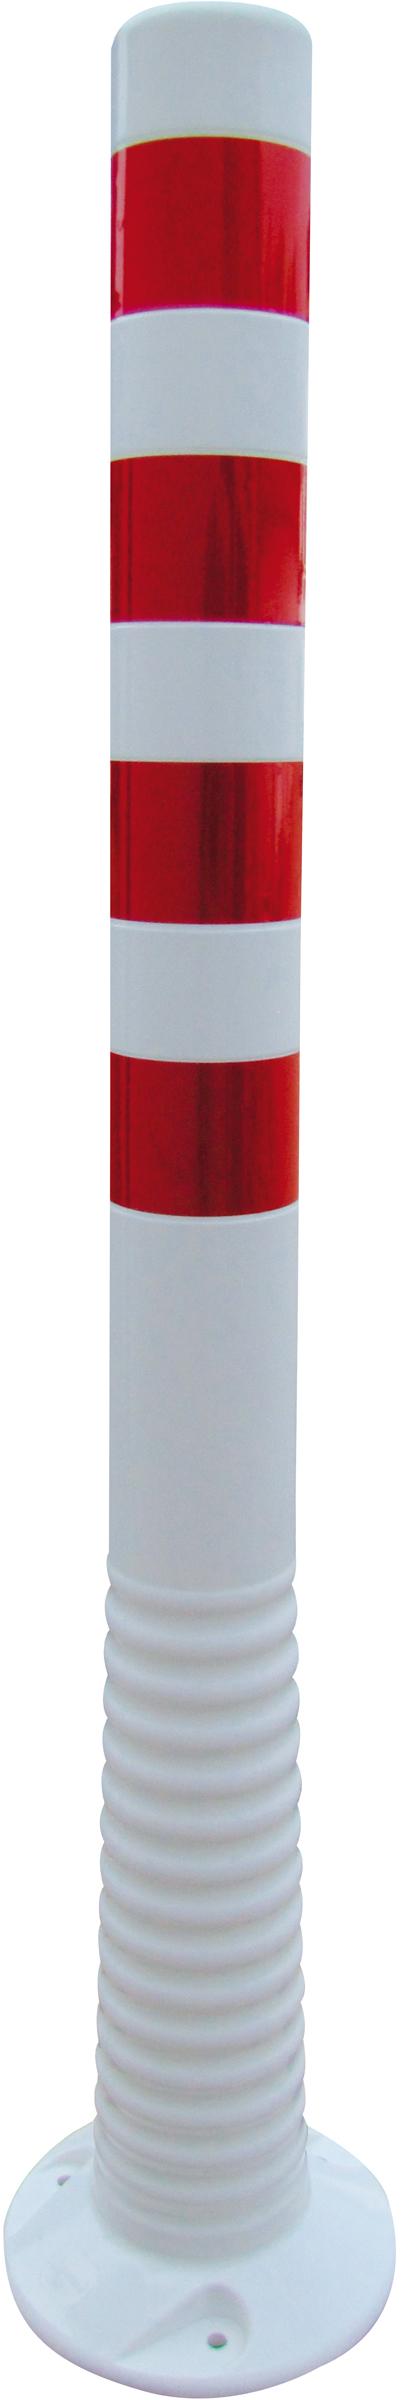 Schake Kunststoffpfosten weiß | rot - 1000 mm